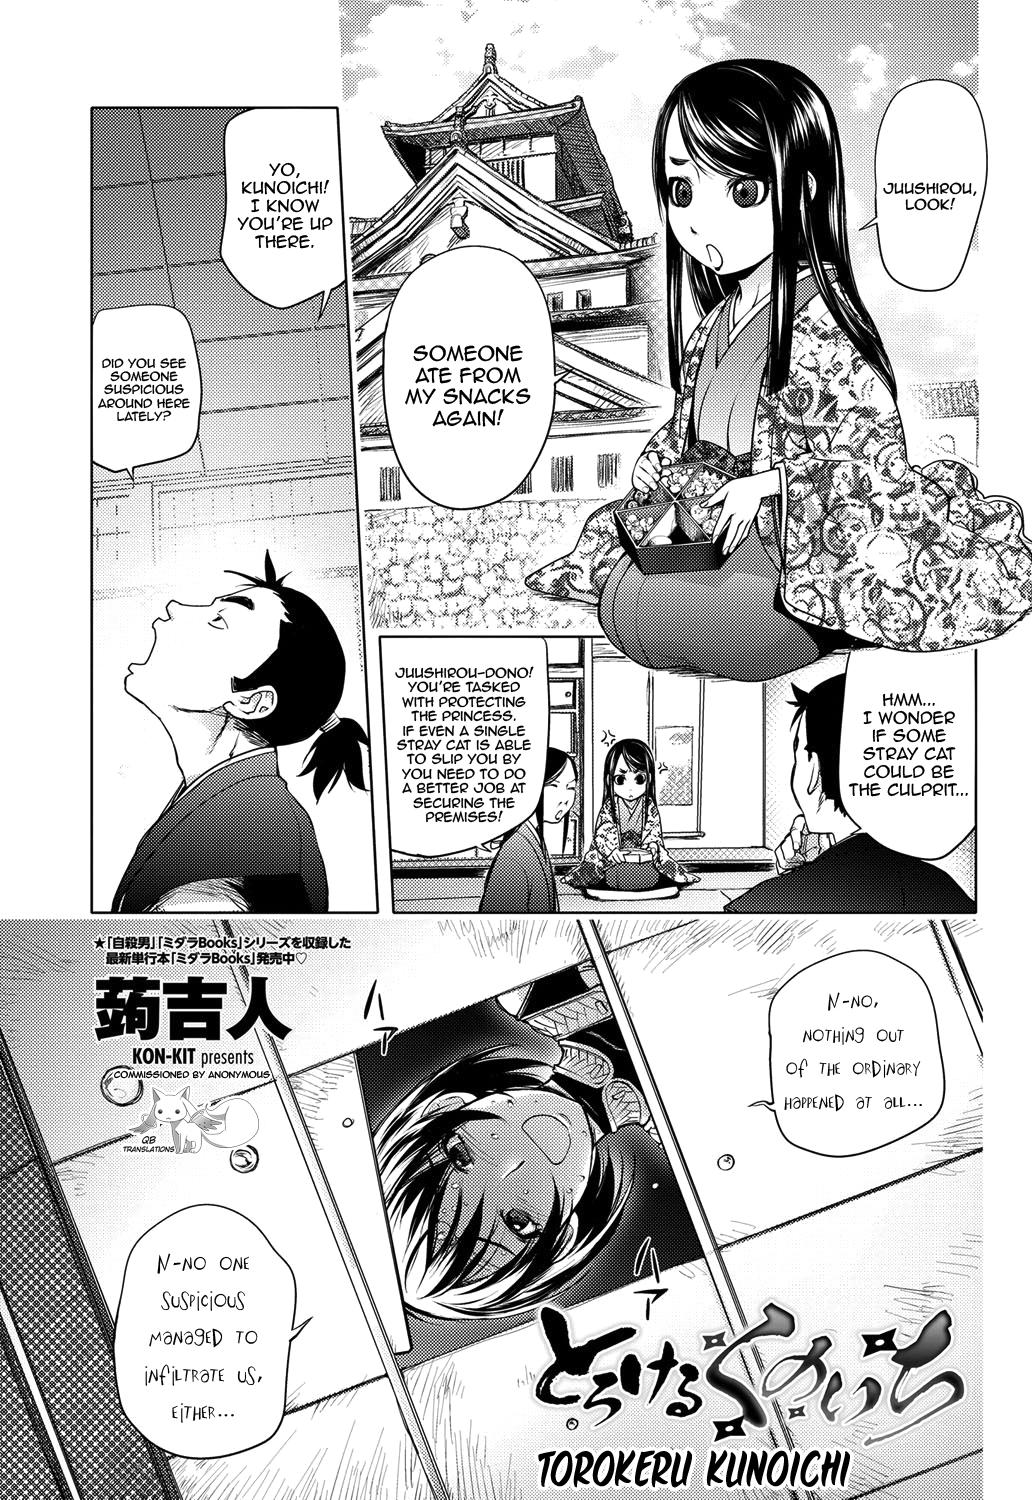 Torokeru Kunoichi NTR Story + Prequel 0